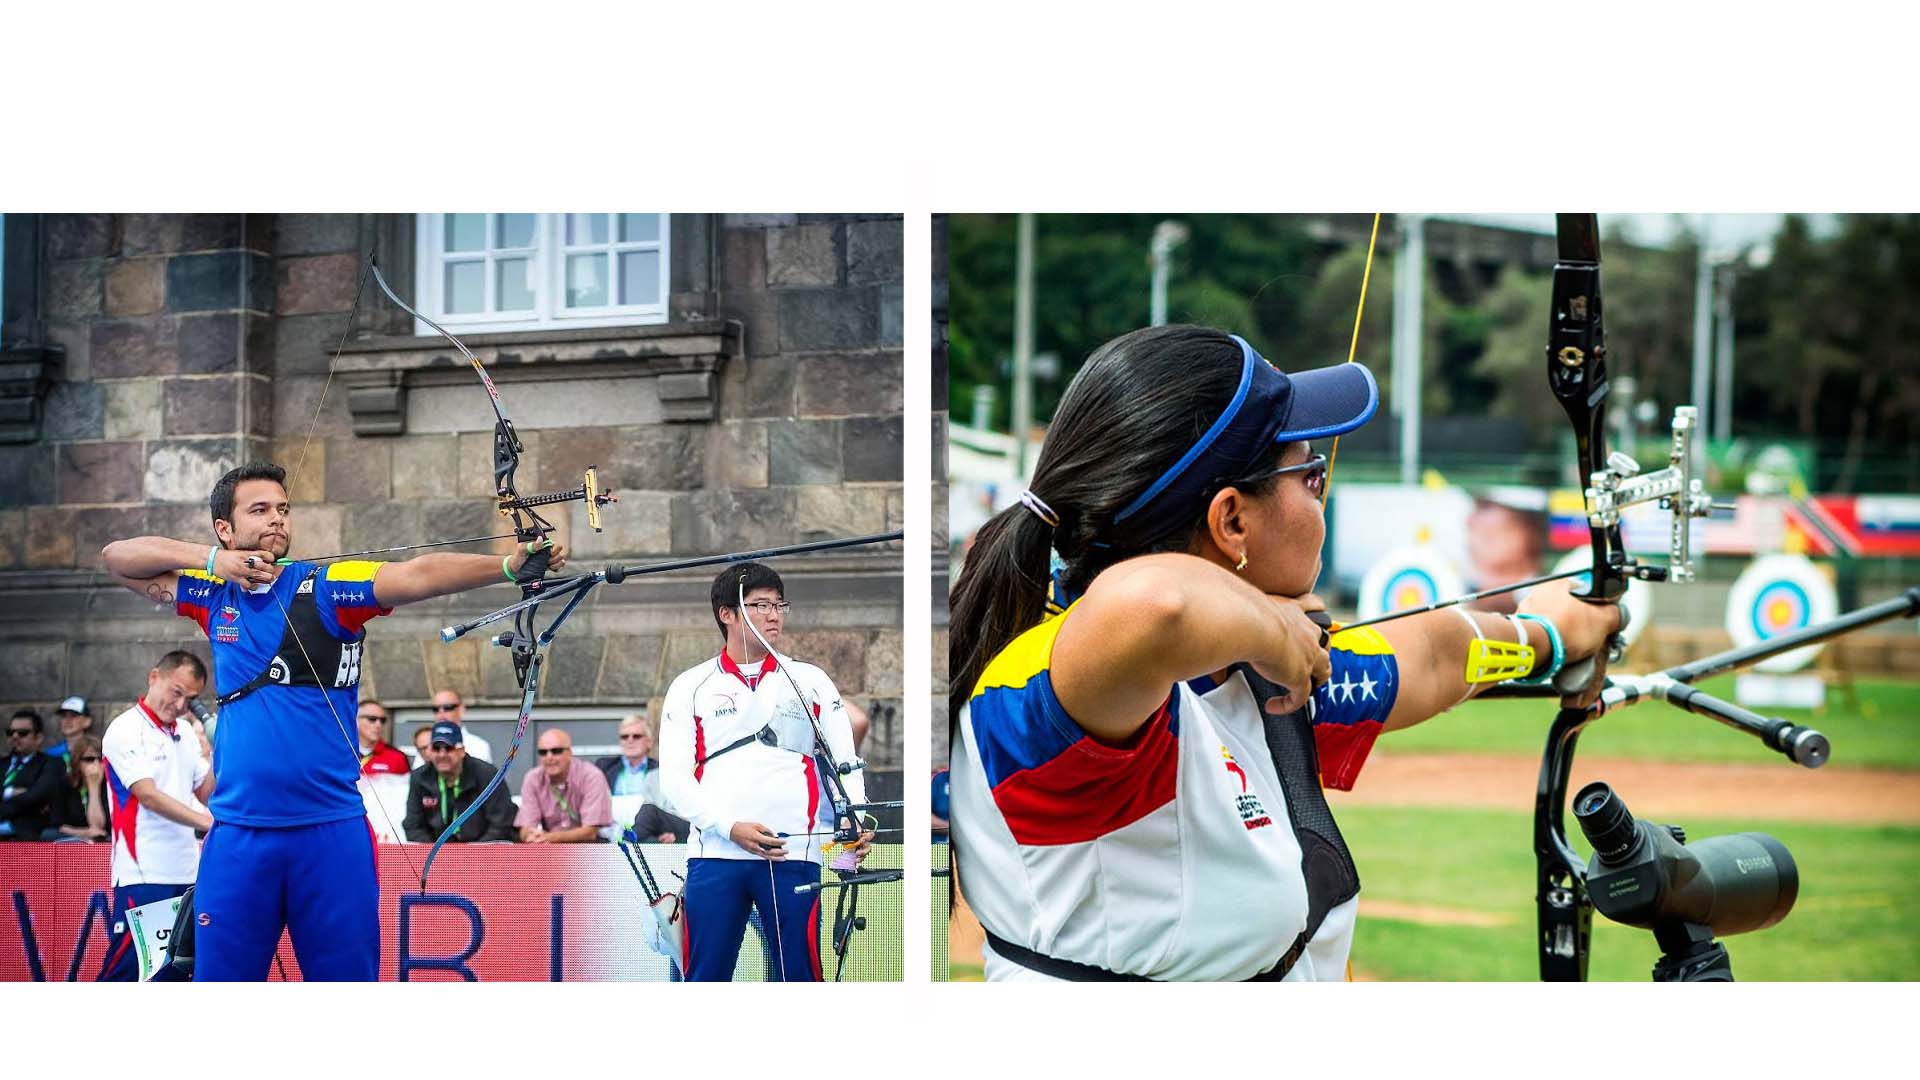 Los tiradores venezolanos, Elías Malave y Leidys Brito, brillaron en su debut olímpico y se citaron para la eliminatoria de 64